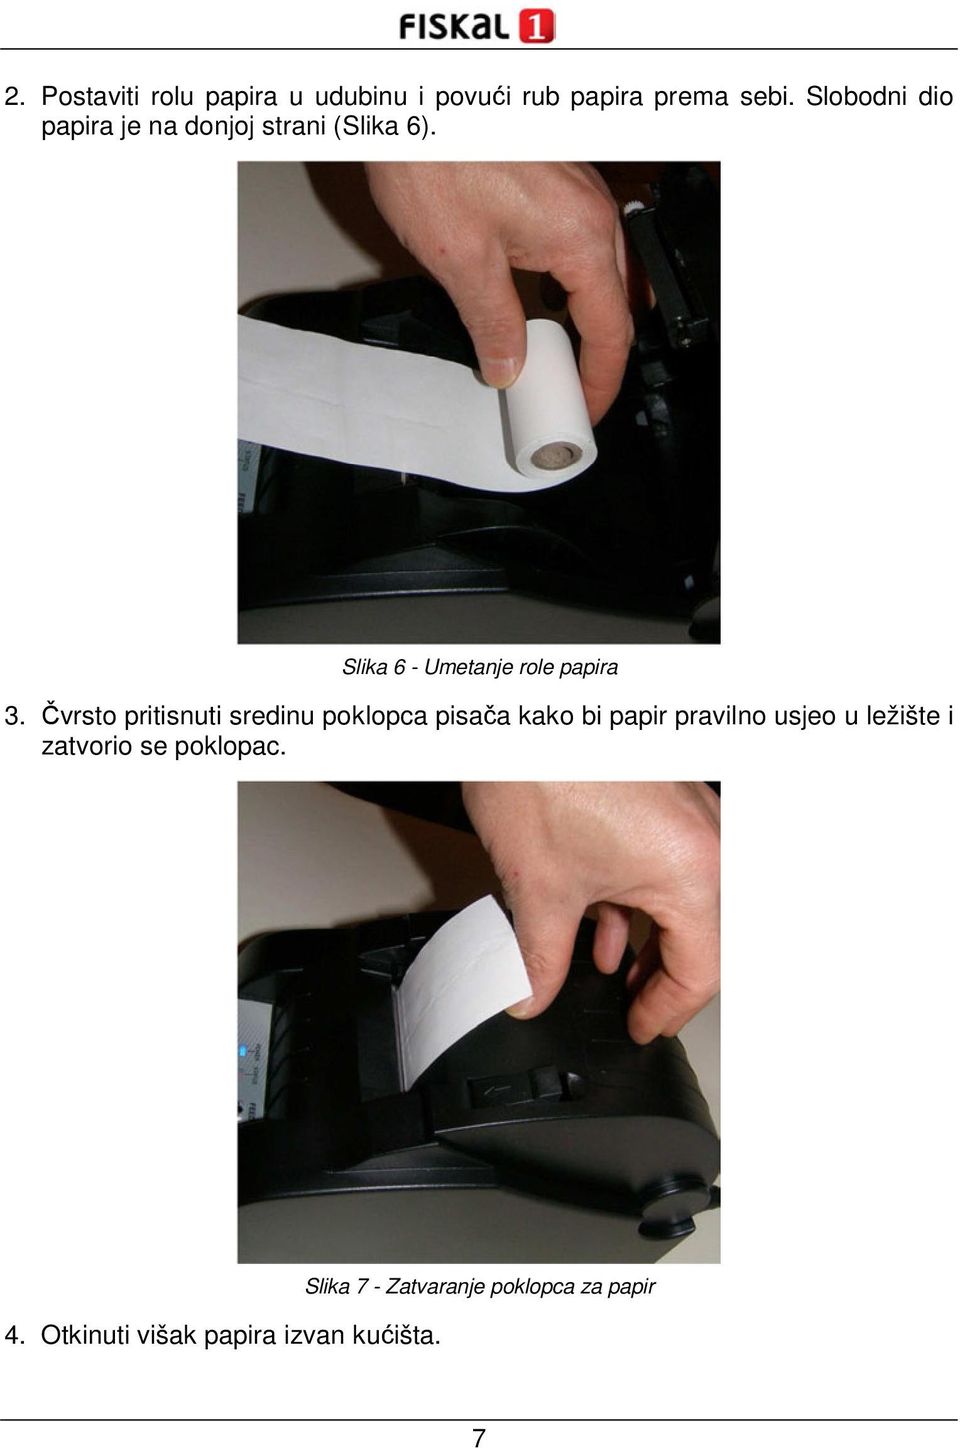 Čvrsto pritisnuti sredinu poklopca pisača kako bi papir pravilno usjeo u ležište i